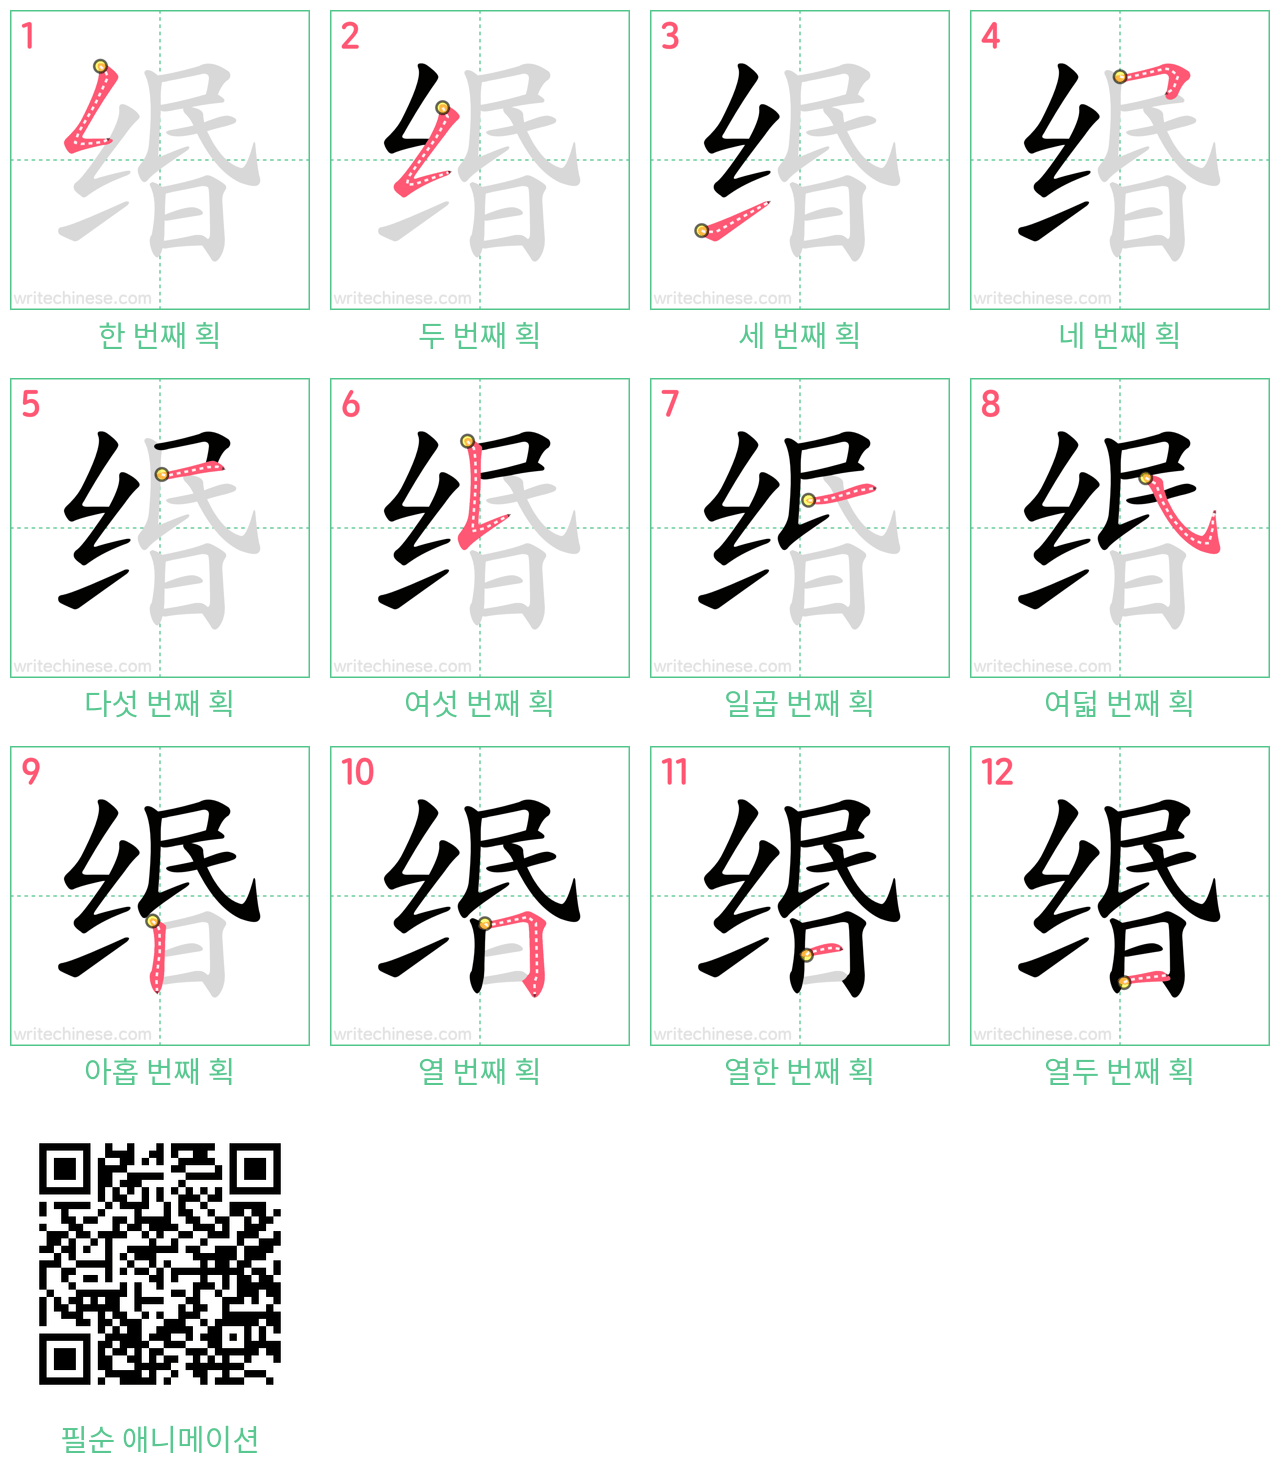 缗 step-by-step stroke order diagrams